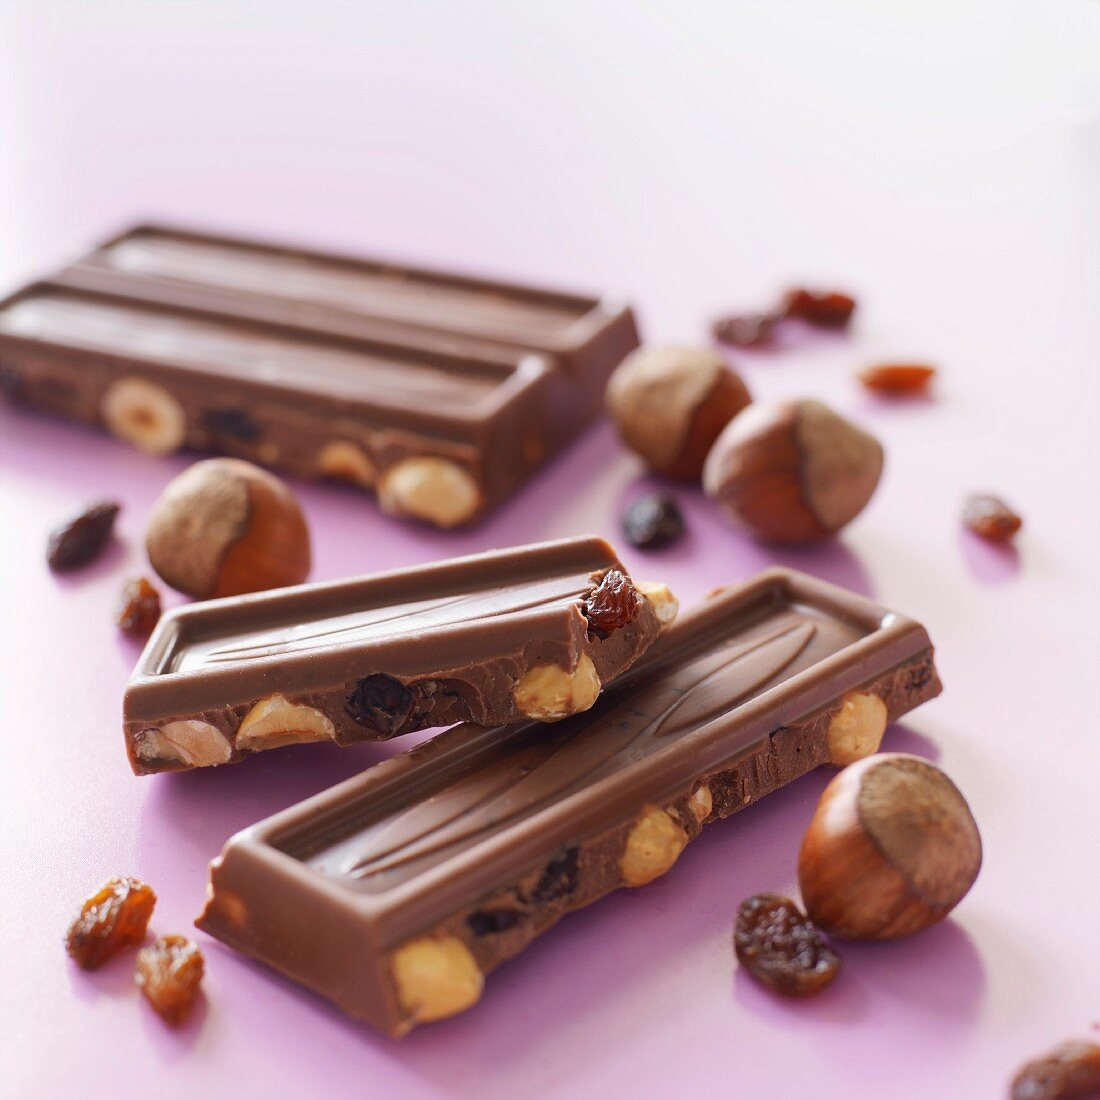 Schokoladen mit Nüssen und Trockenfrüchten